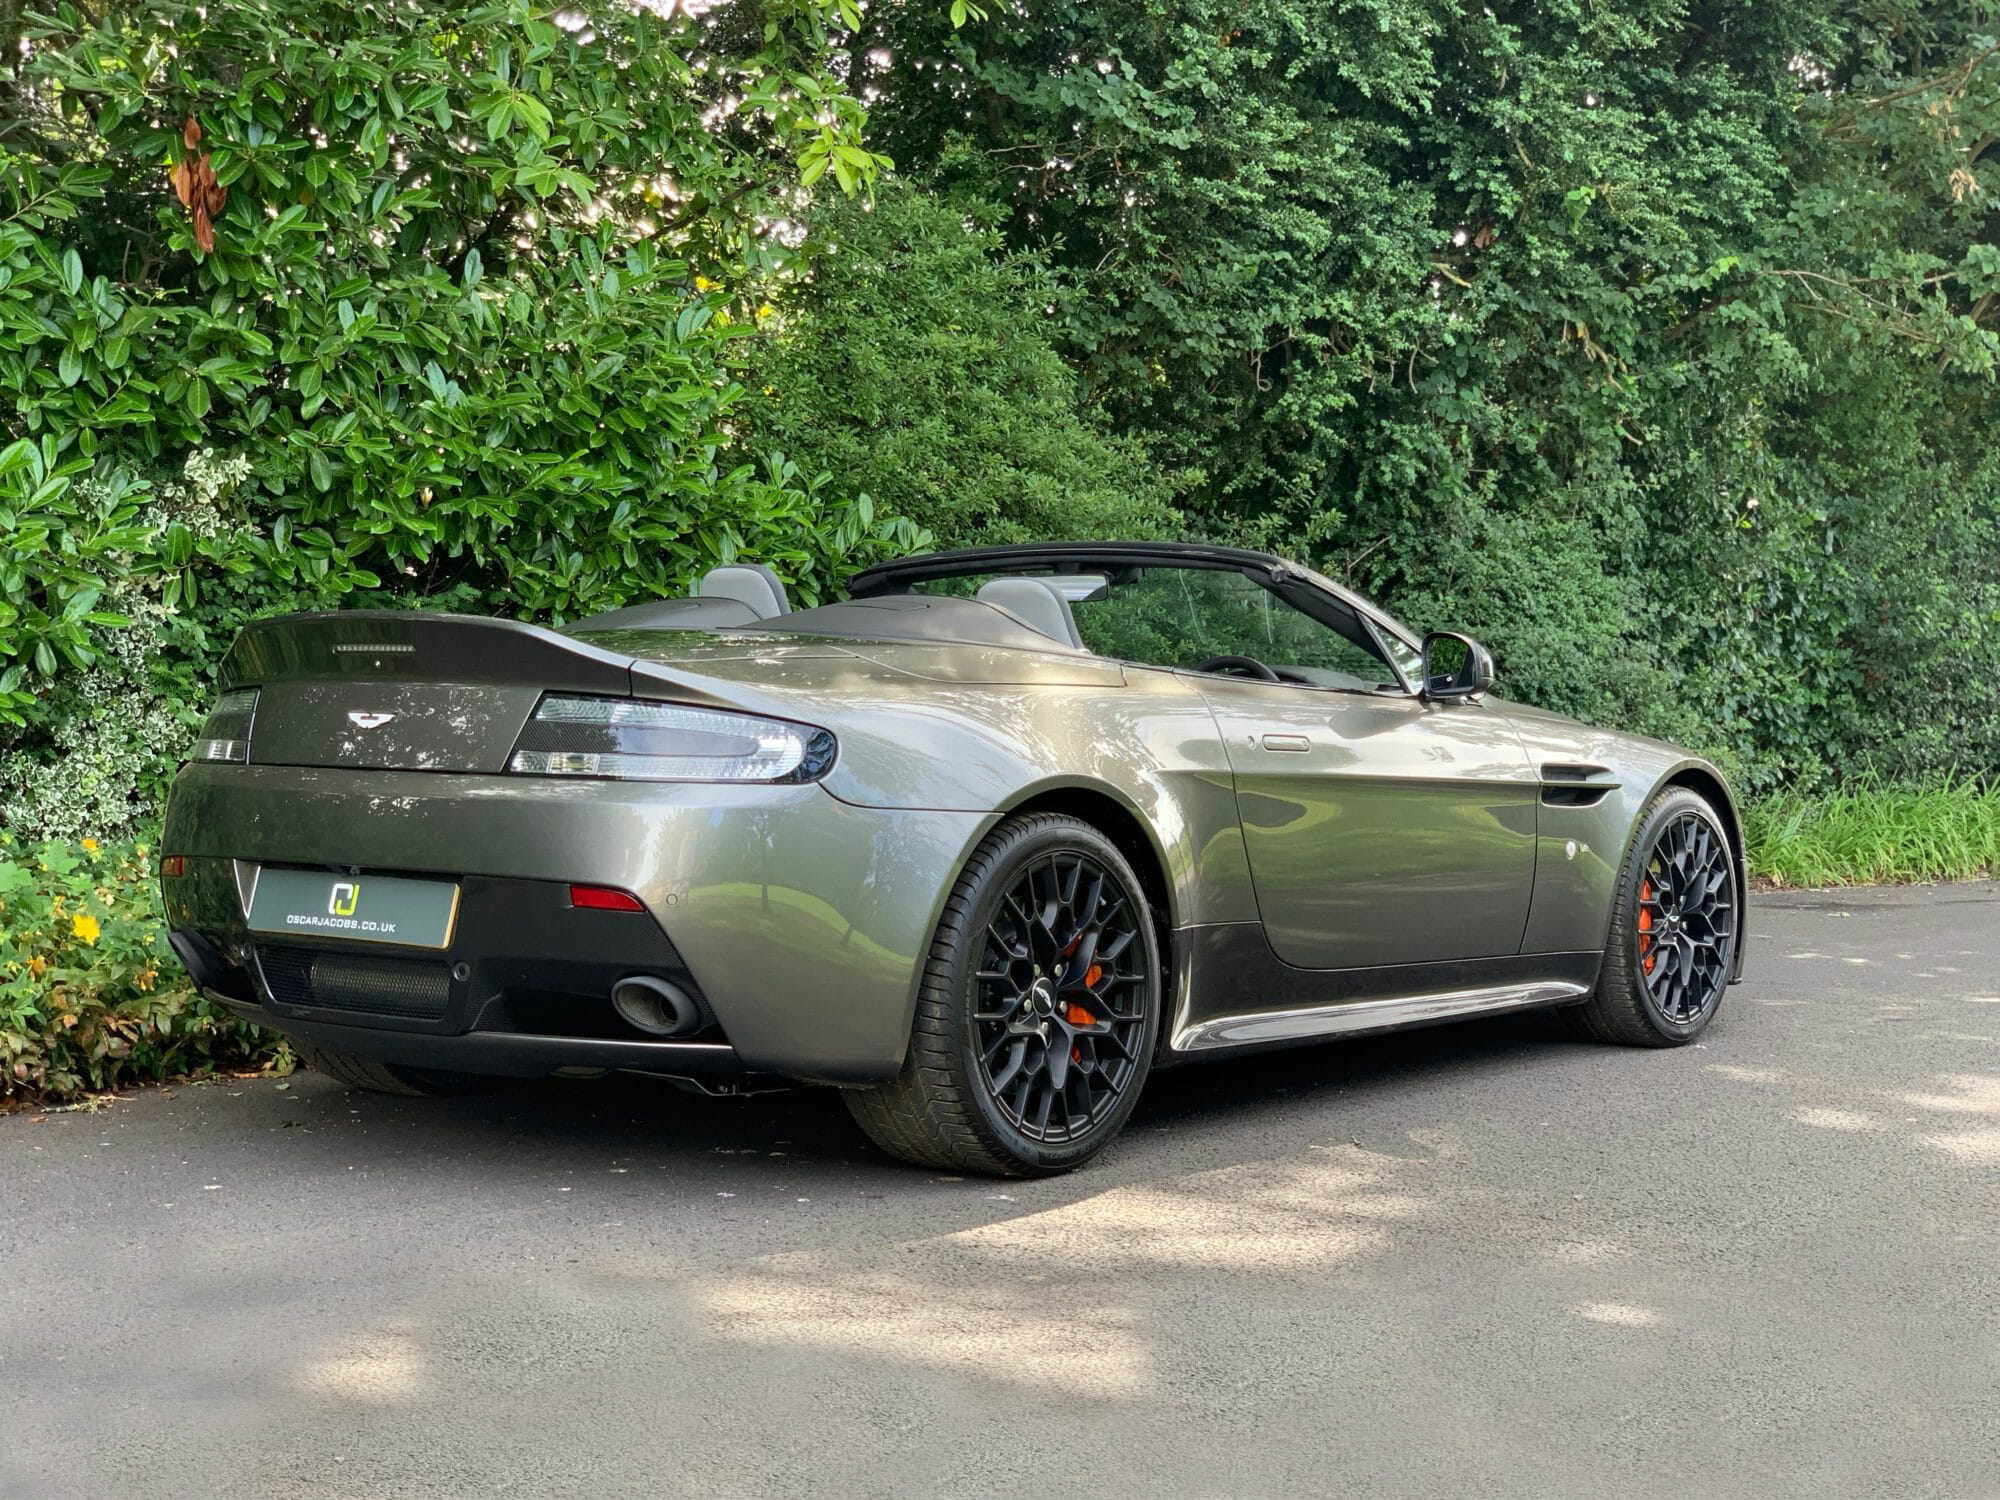 Aston Martin AMR V12 Vantage Roadster